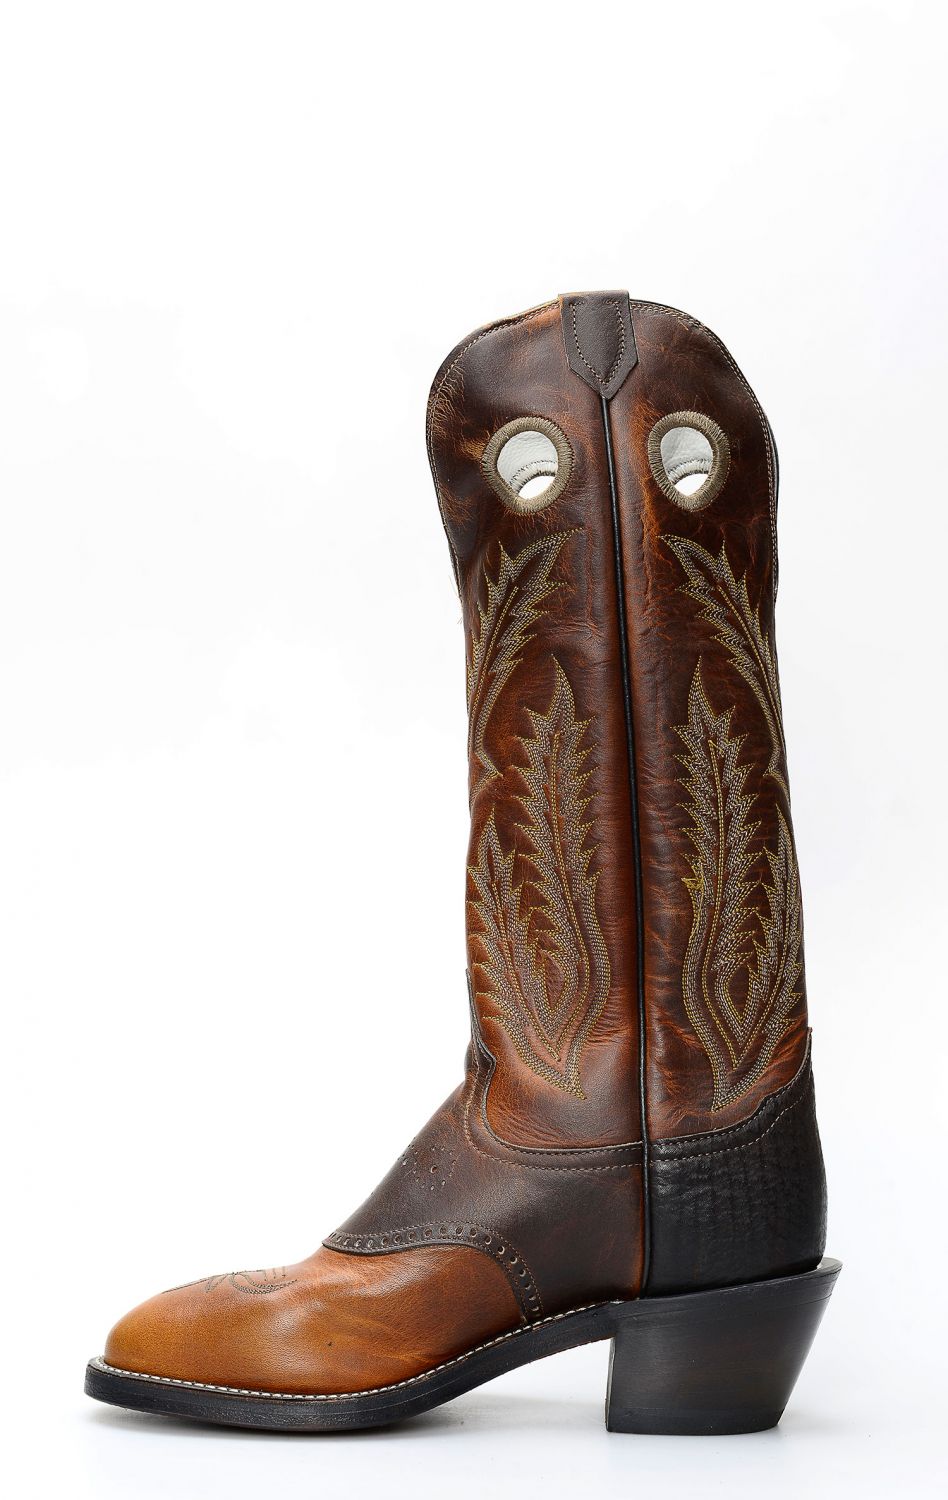 Tony Lama boots buckaroo style dark brown | 6891